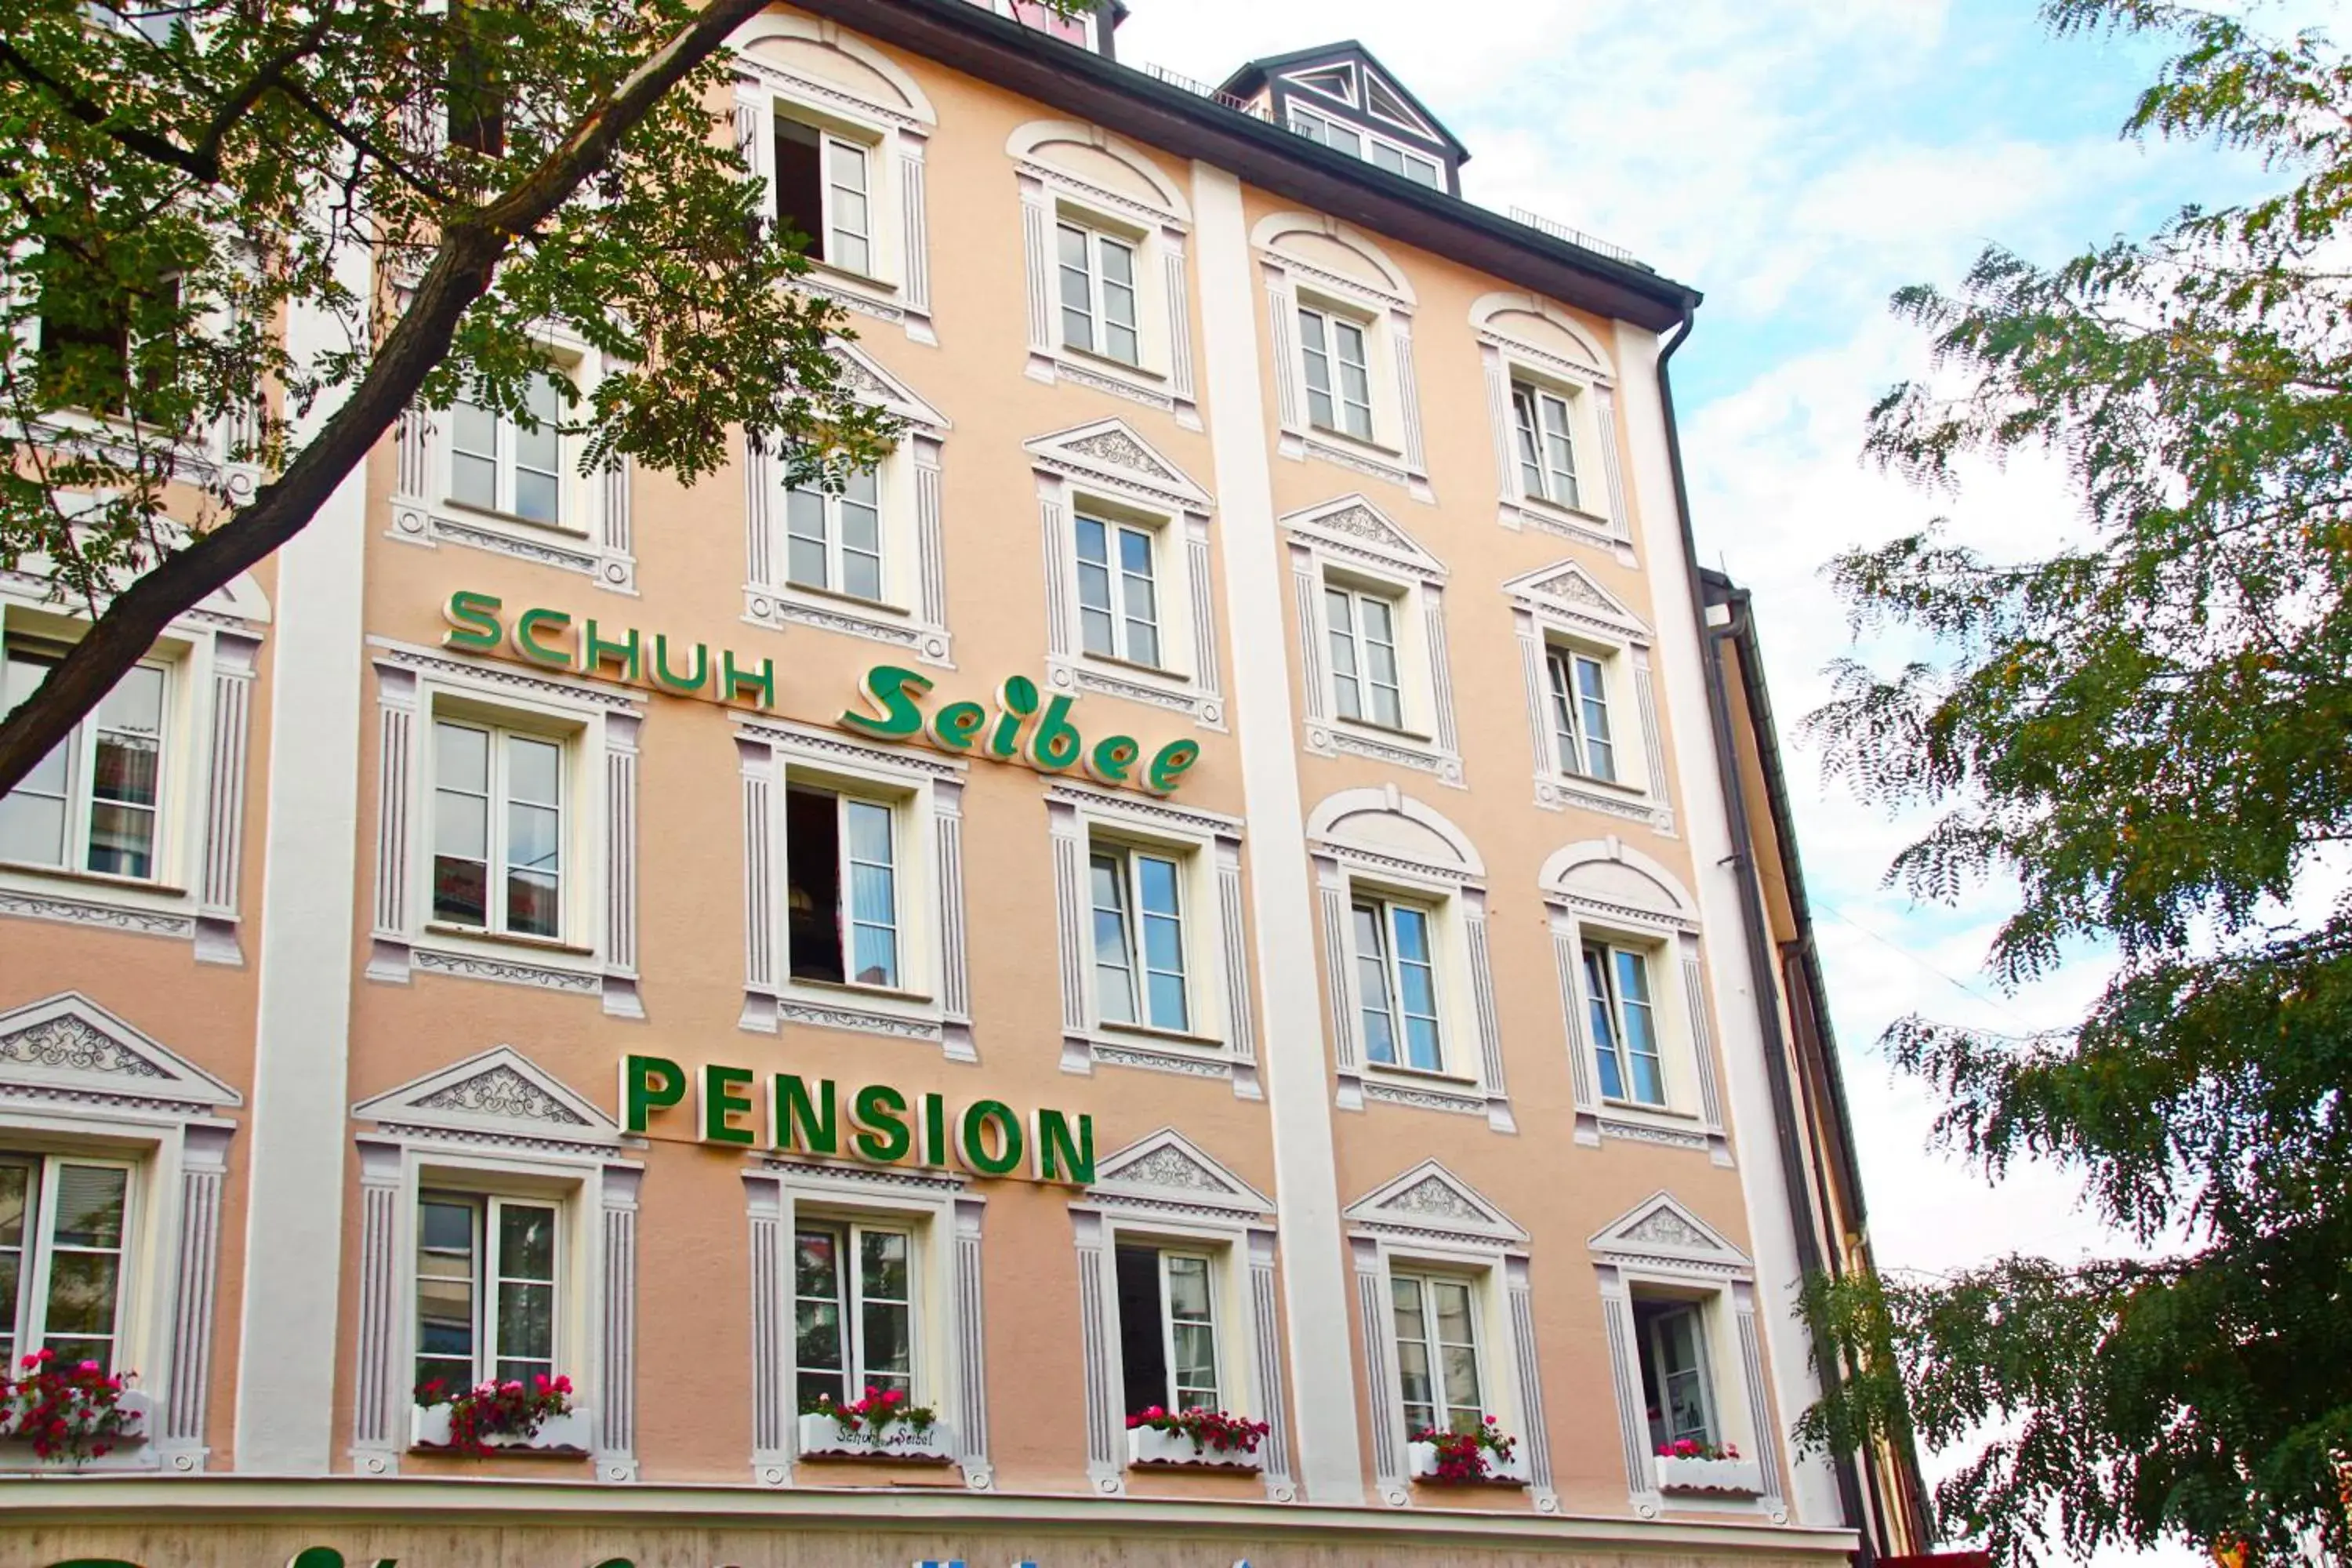 Facade/entrance, Property Building in Pension Seibel